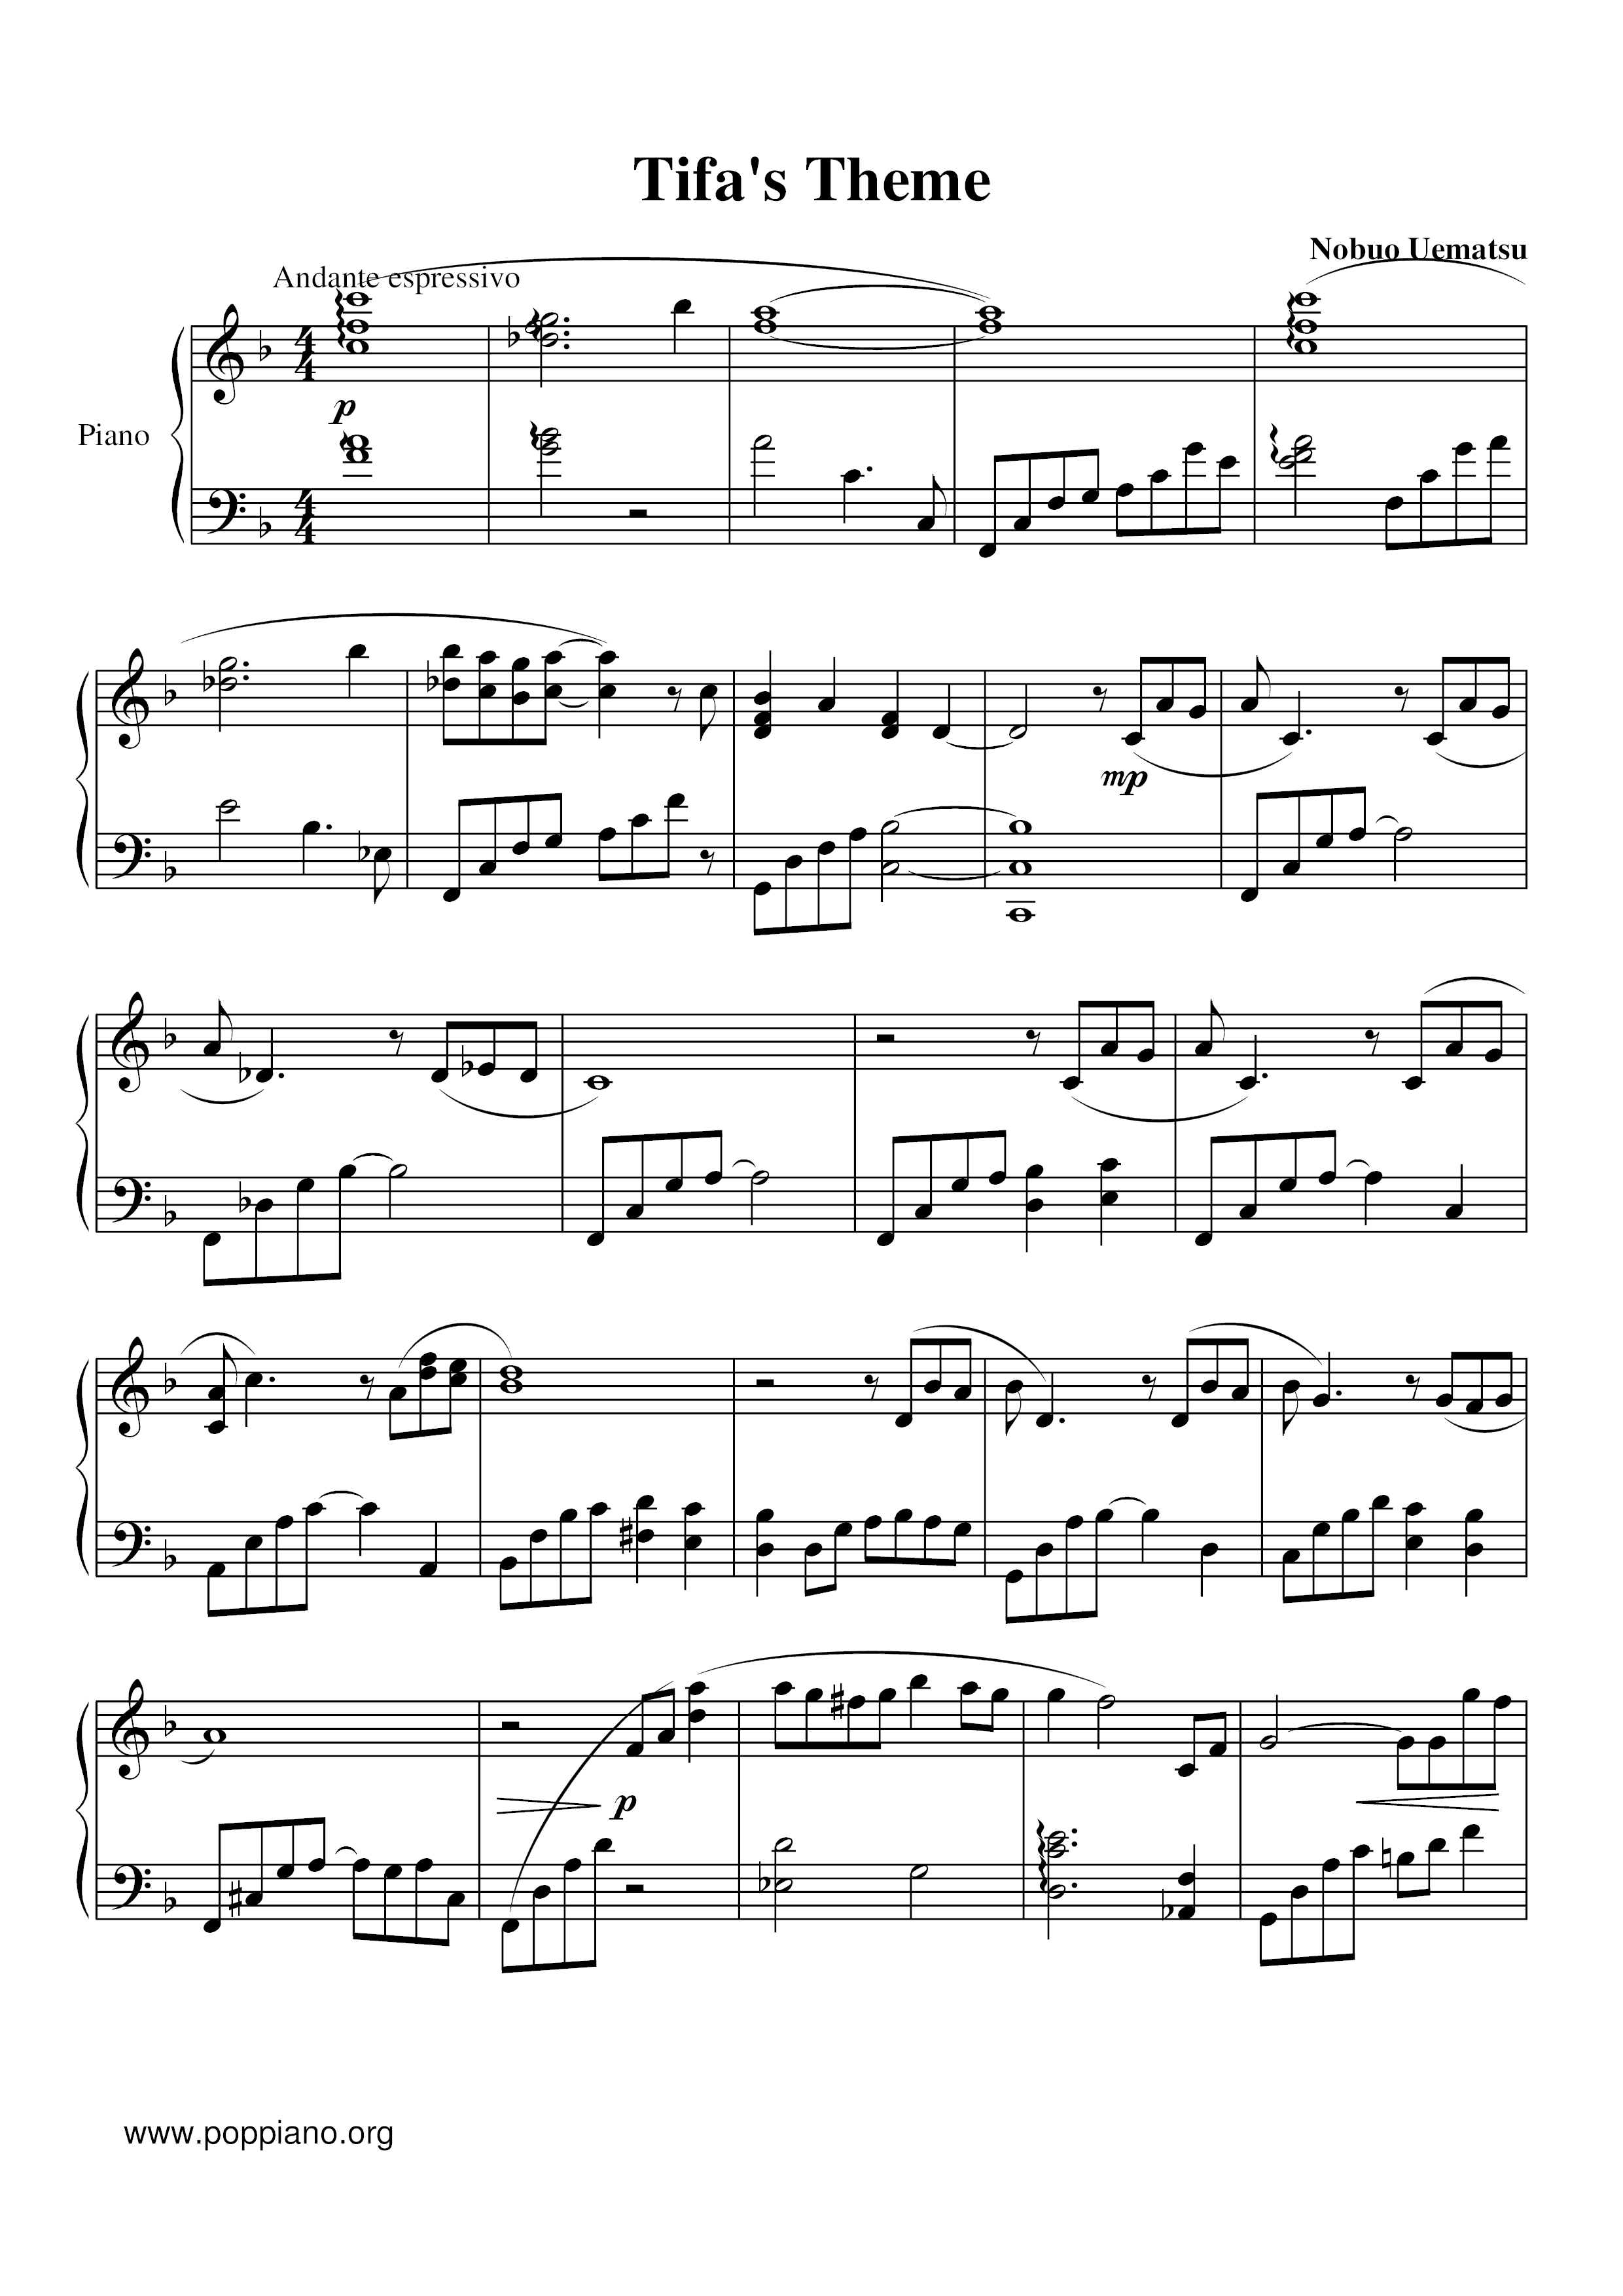 Tifa's Theme Score